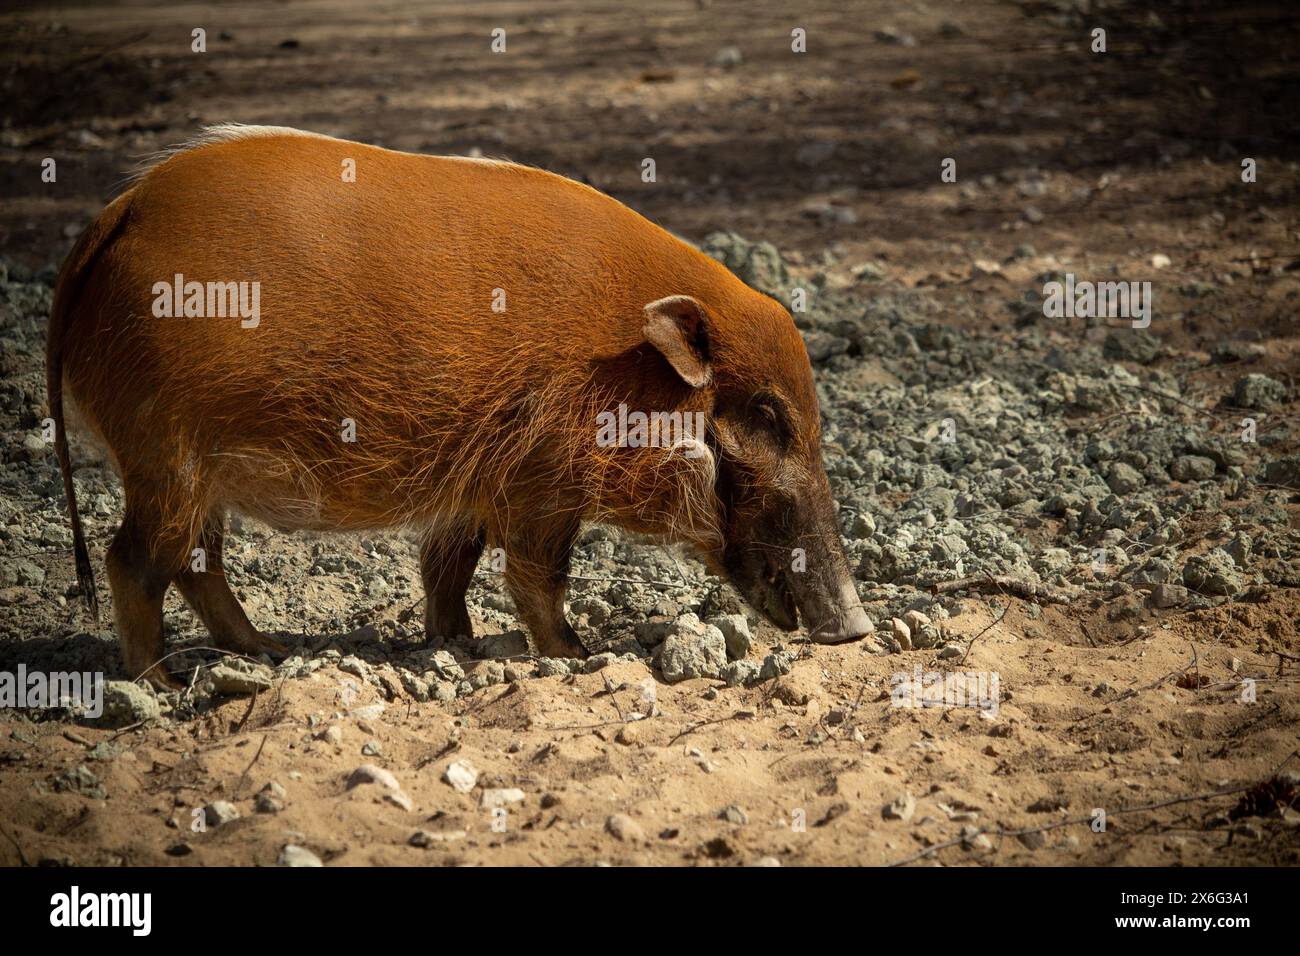 Maiale di fiume rosso (Potamochoerus porcus) o maiale cespuglio in cerca di cibo. Foto Stock